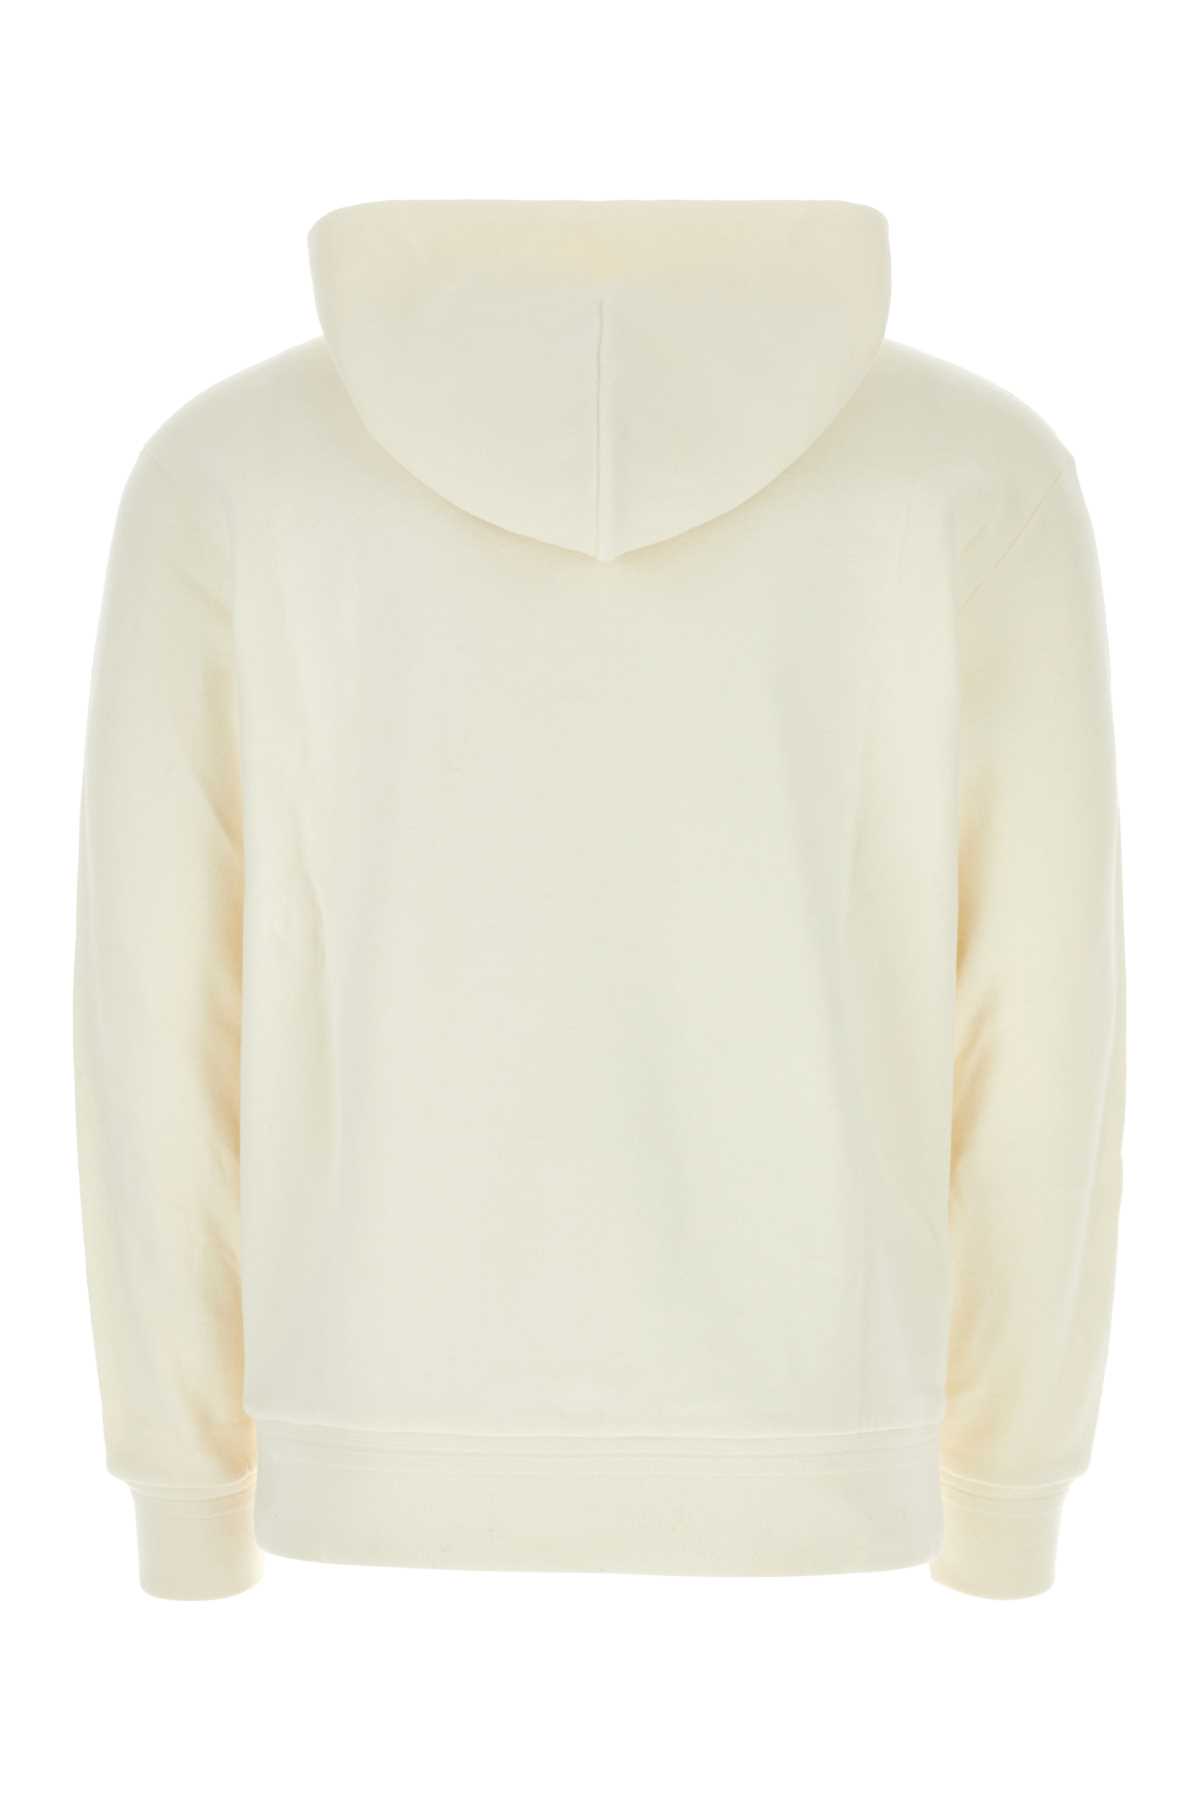 Zegna Ivory Cotton Blend Sweatshirt In N01